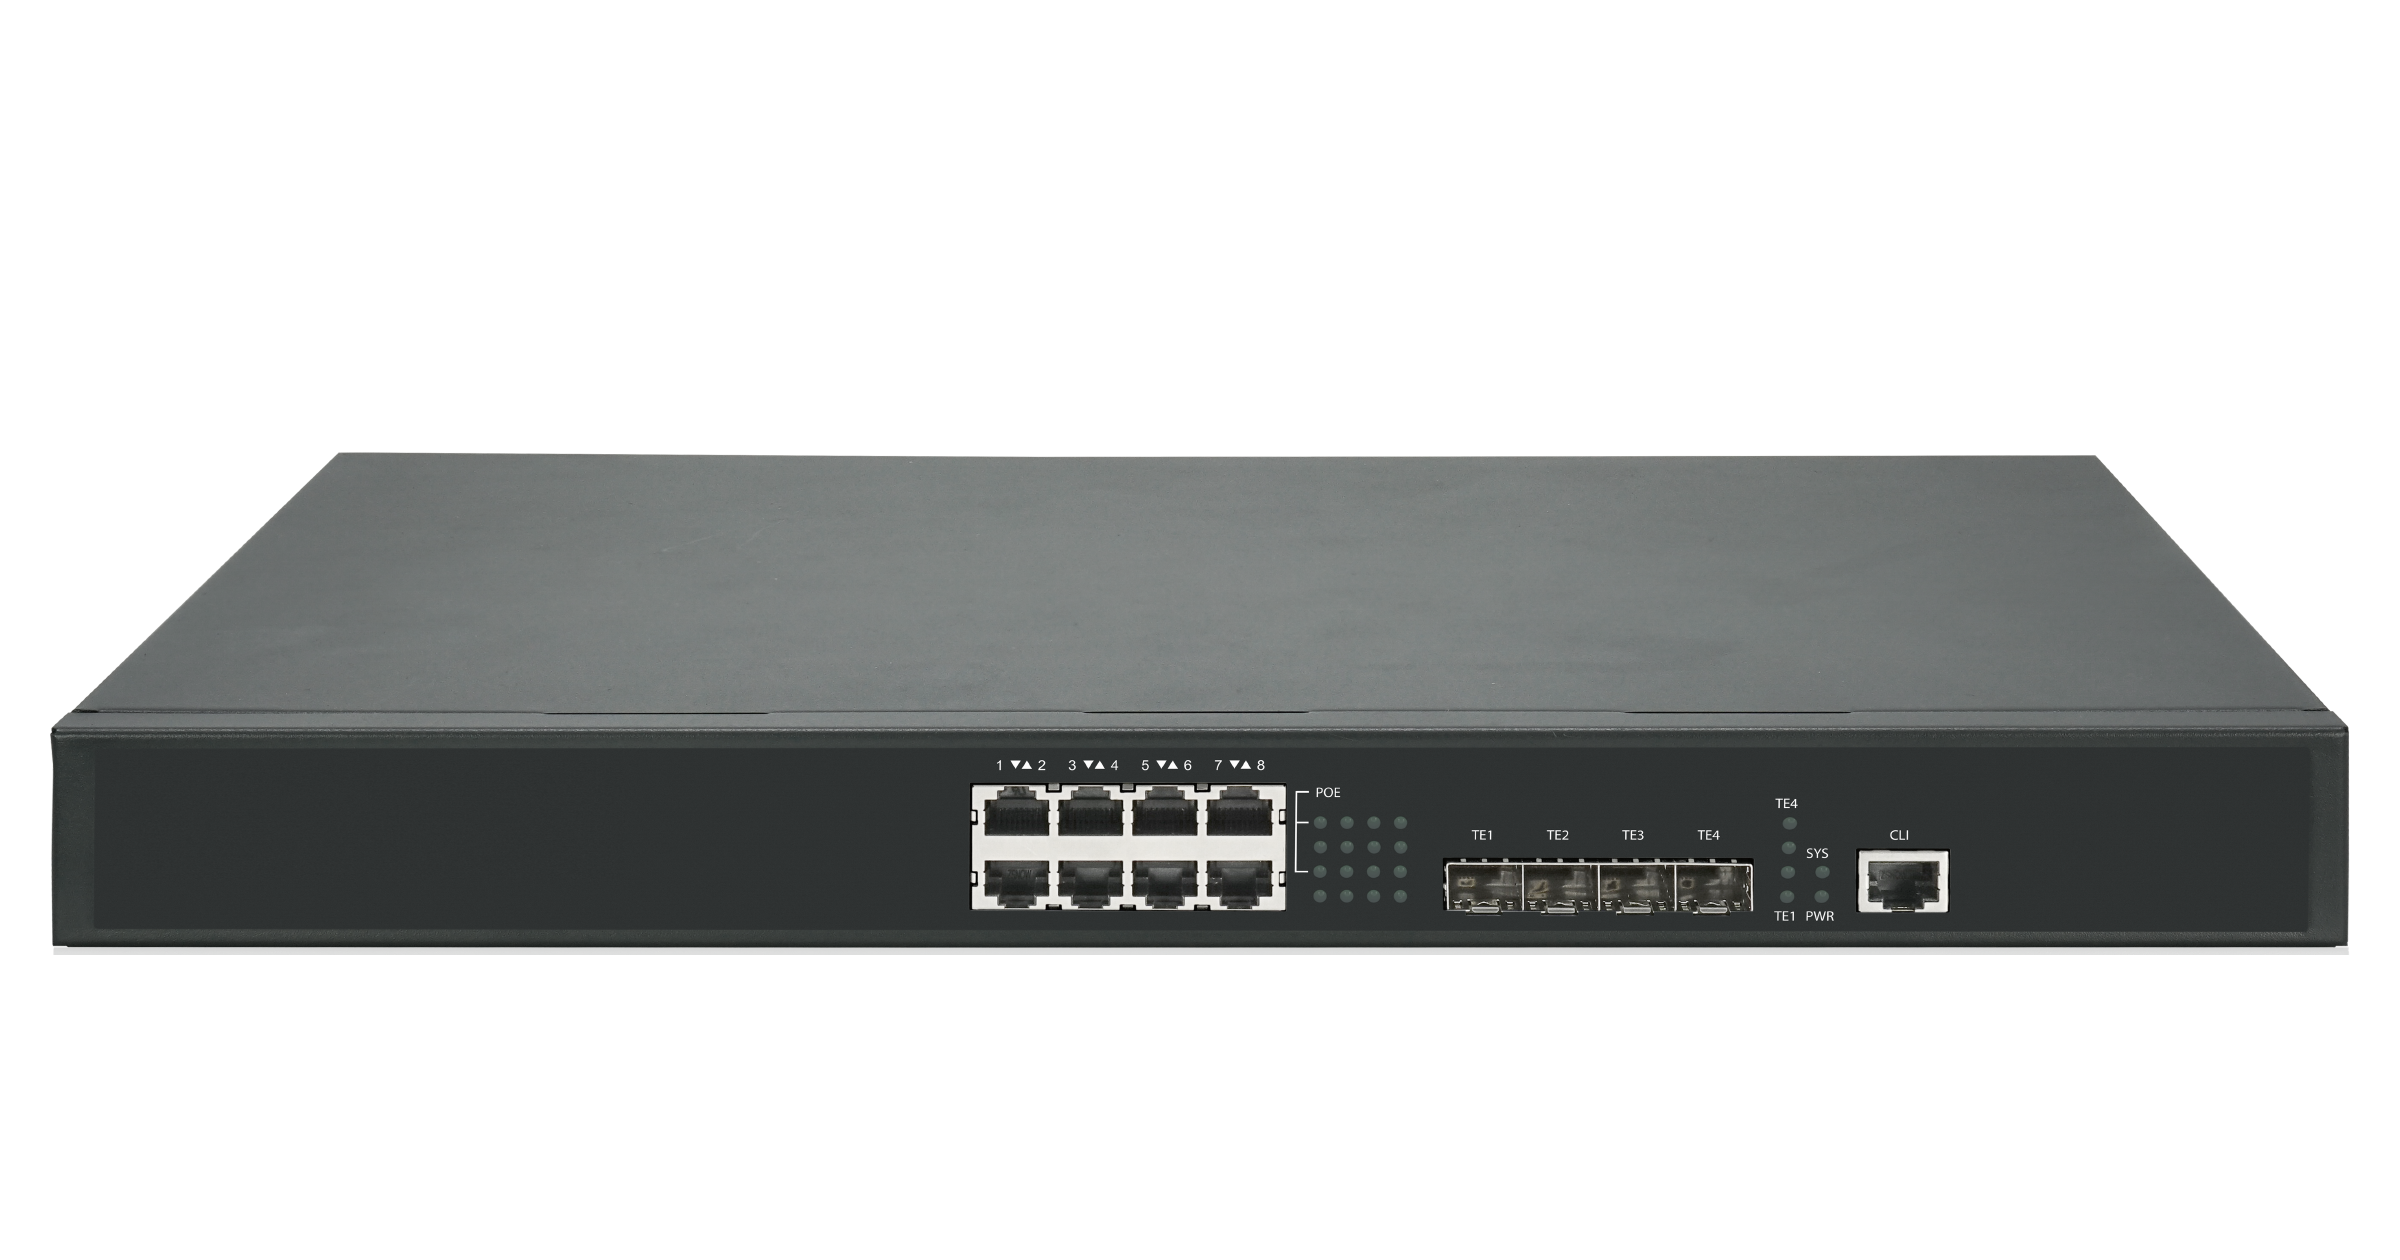 Коммутатор GigaLink GL-SW-G305-12P, управляемый, кол-во портов: 8x2.5 Гбит/с, кол-во SFP/uplink: SFP+ 4x10 Гбит/с, PoE: 8x60 Вт (макс. 370 Вт) (GL-SW-G305-12P)